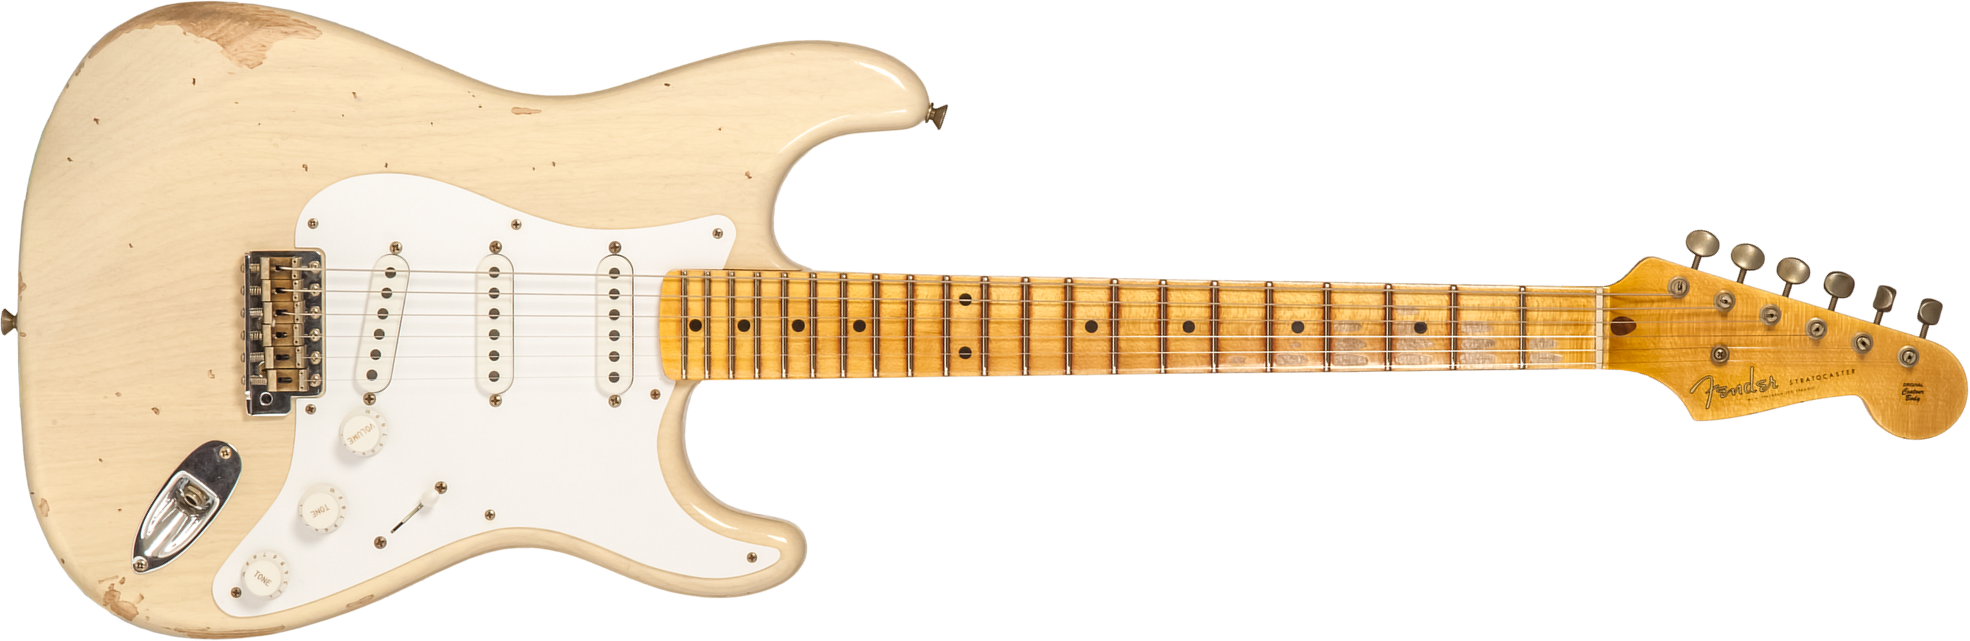 Fender Custom Shop Strat 1954 70th Anniv. 3s Trem Mn #xn4342 - Relic Vintage Blonde - Guitare Électrique Forme Str - Main picture